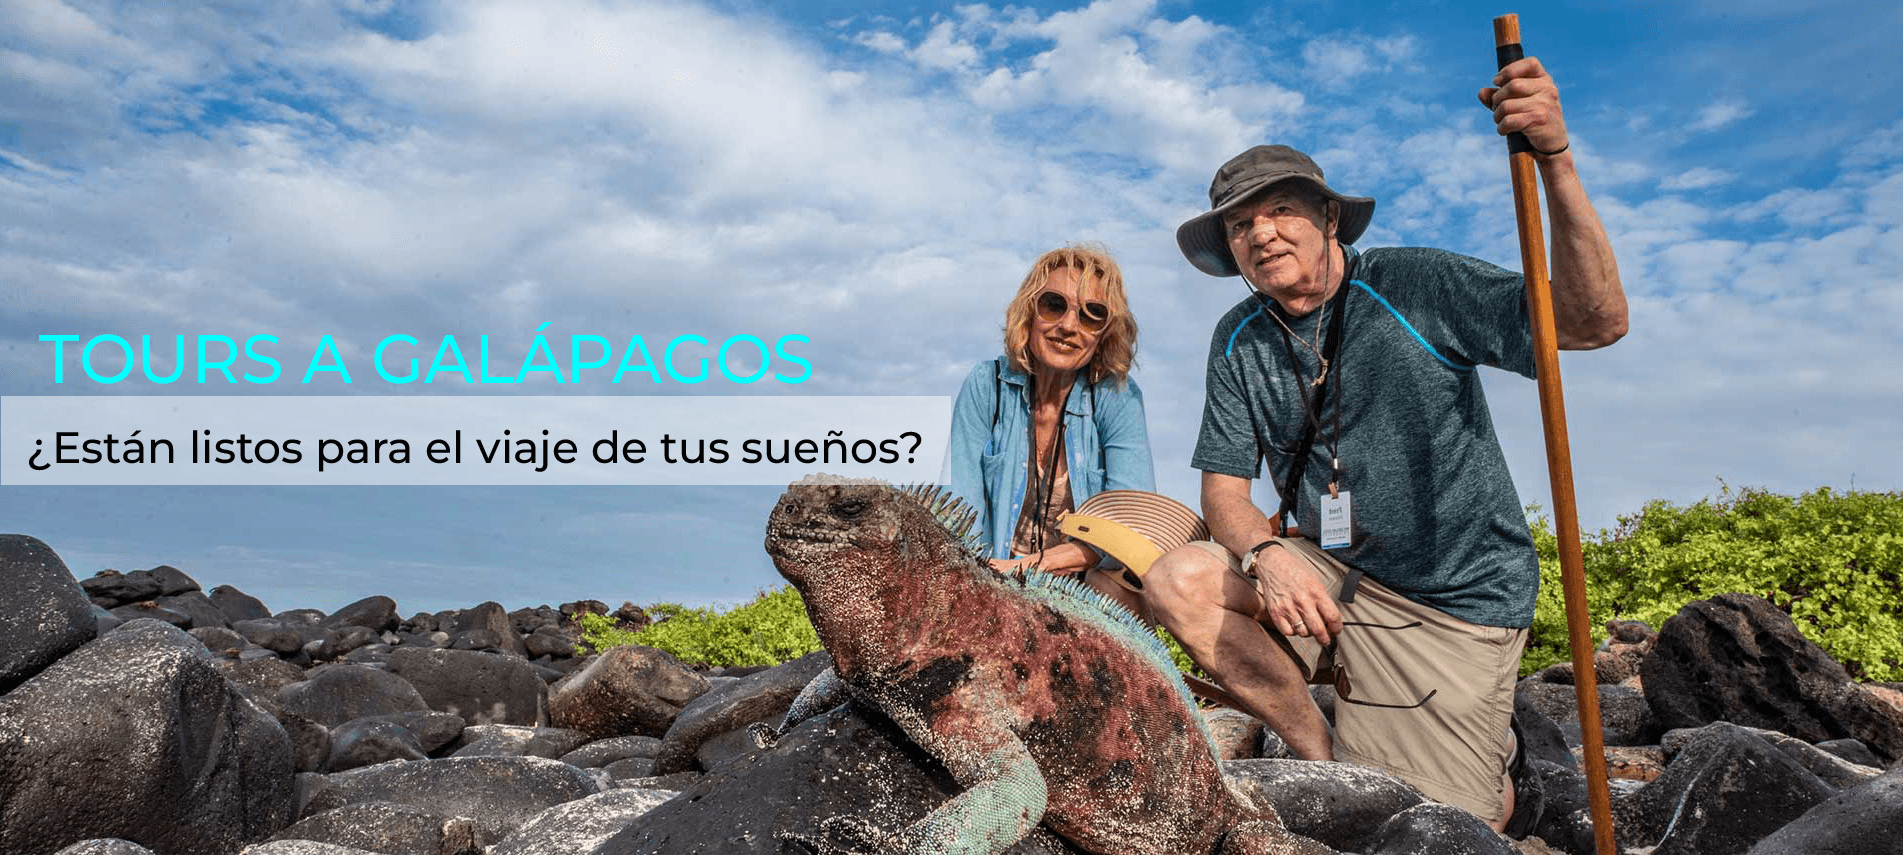 Tours a Galápagos